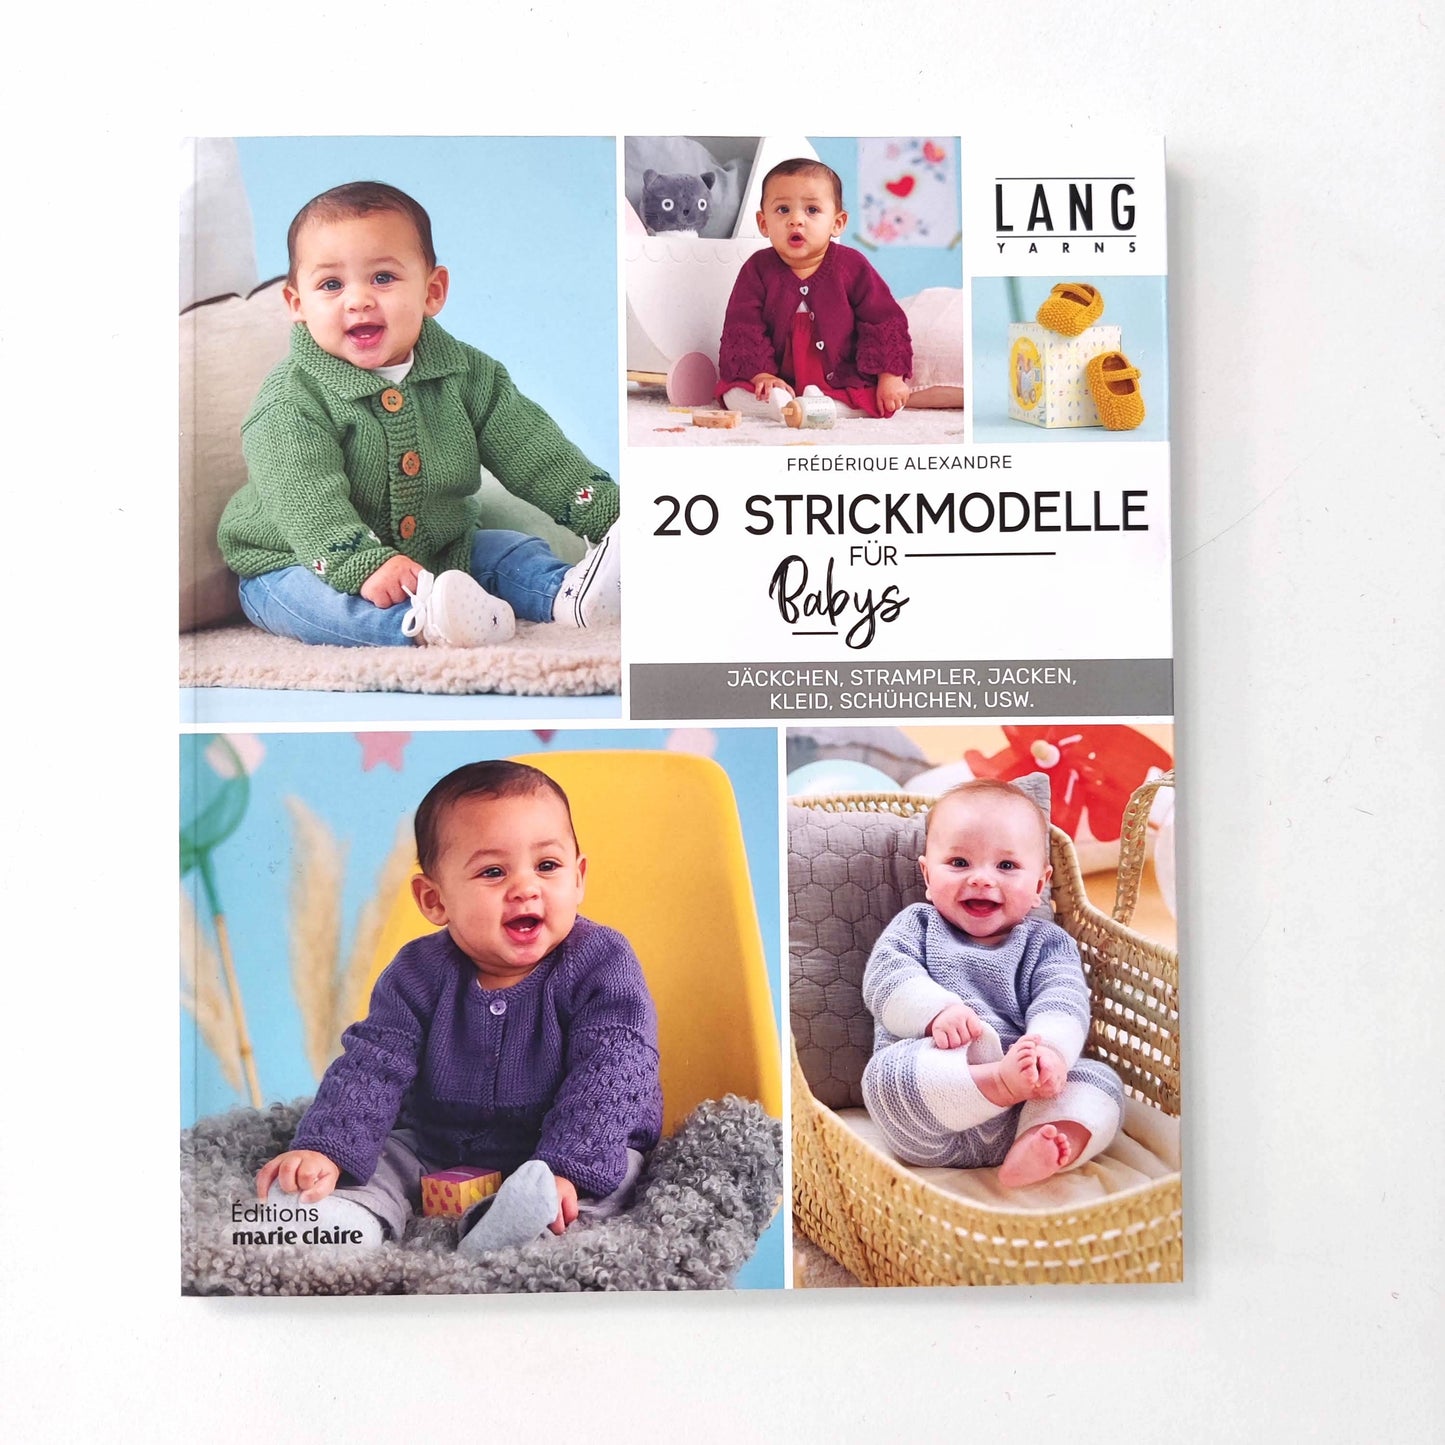 20 Strickmodelle für Babys - Editions marie claire